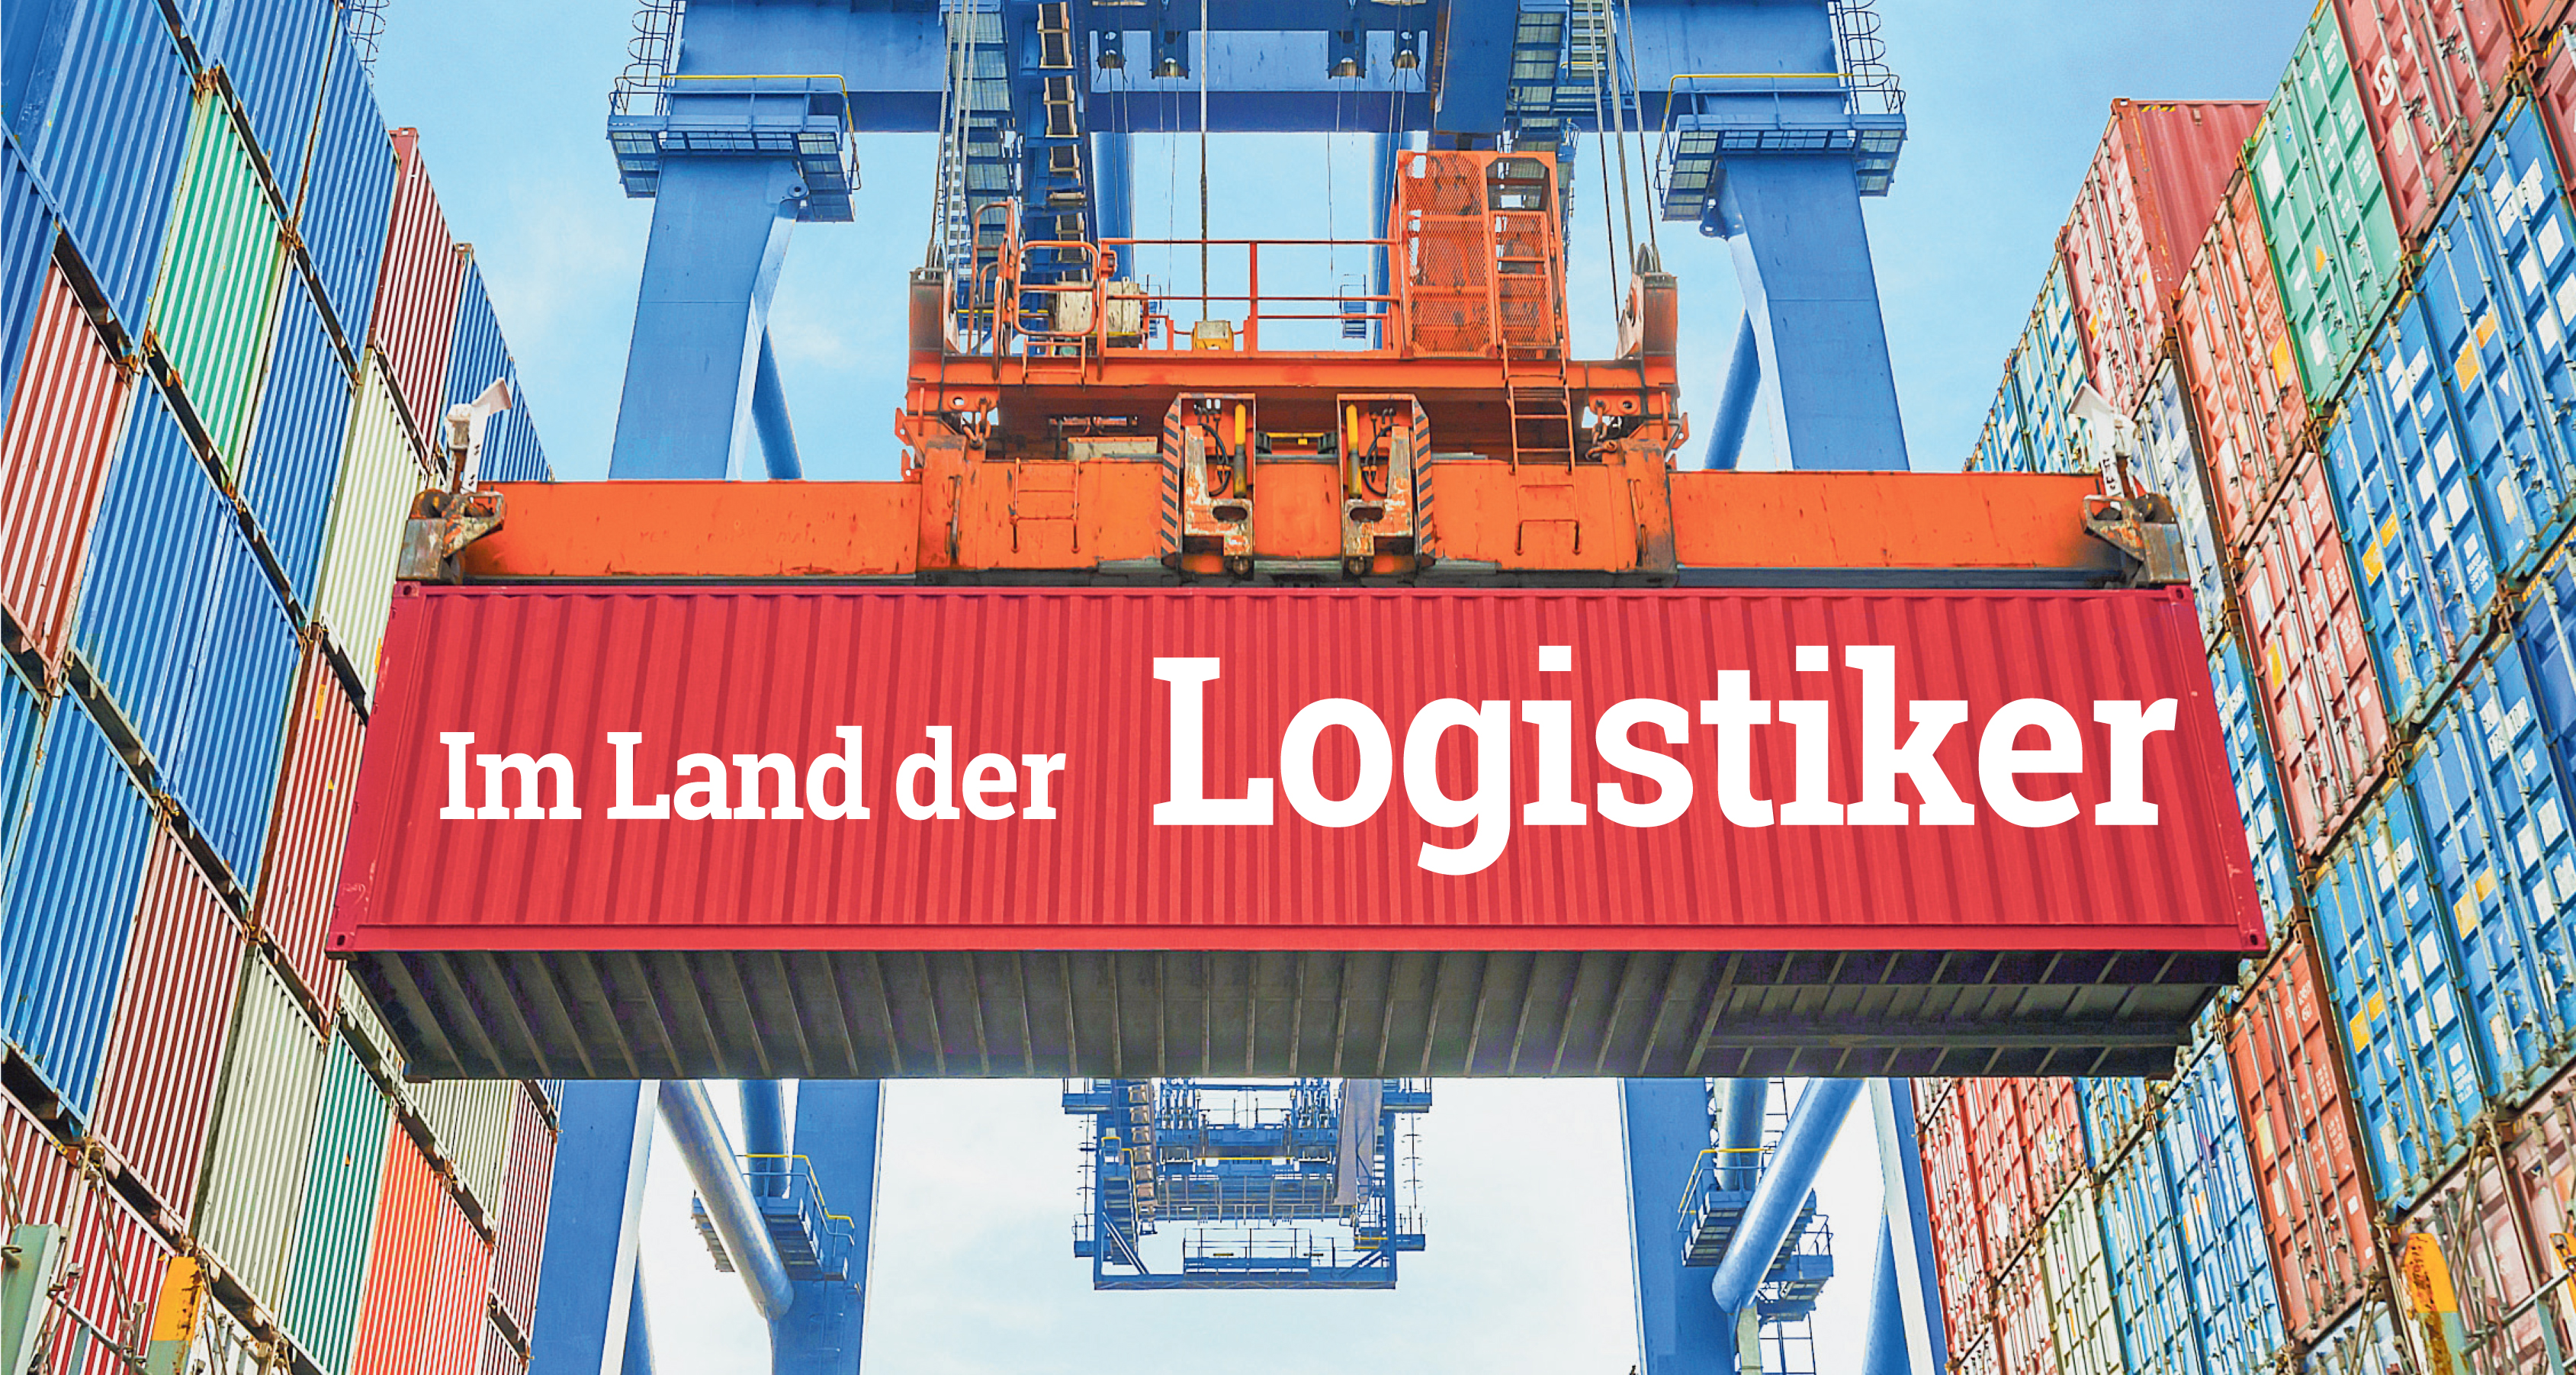 Austria’s logistics industry generates EUR 34 billion in annual sales